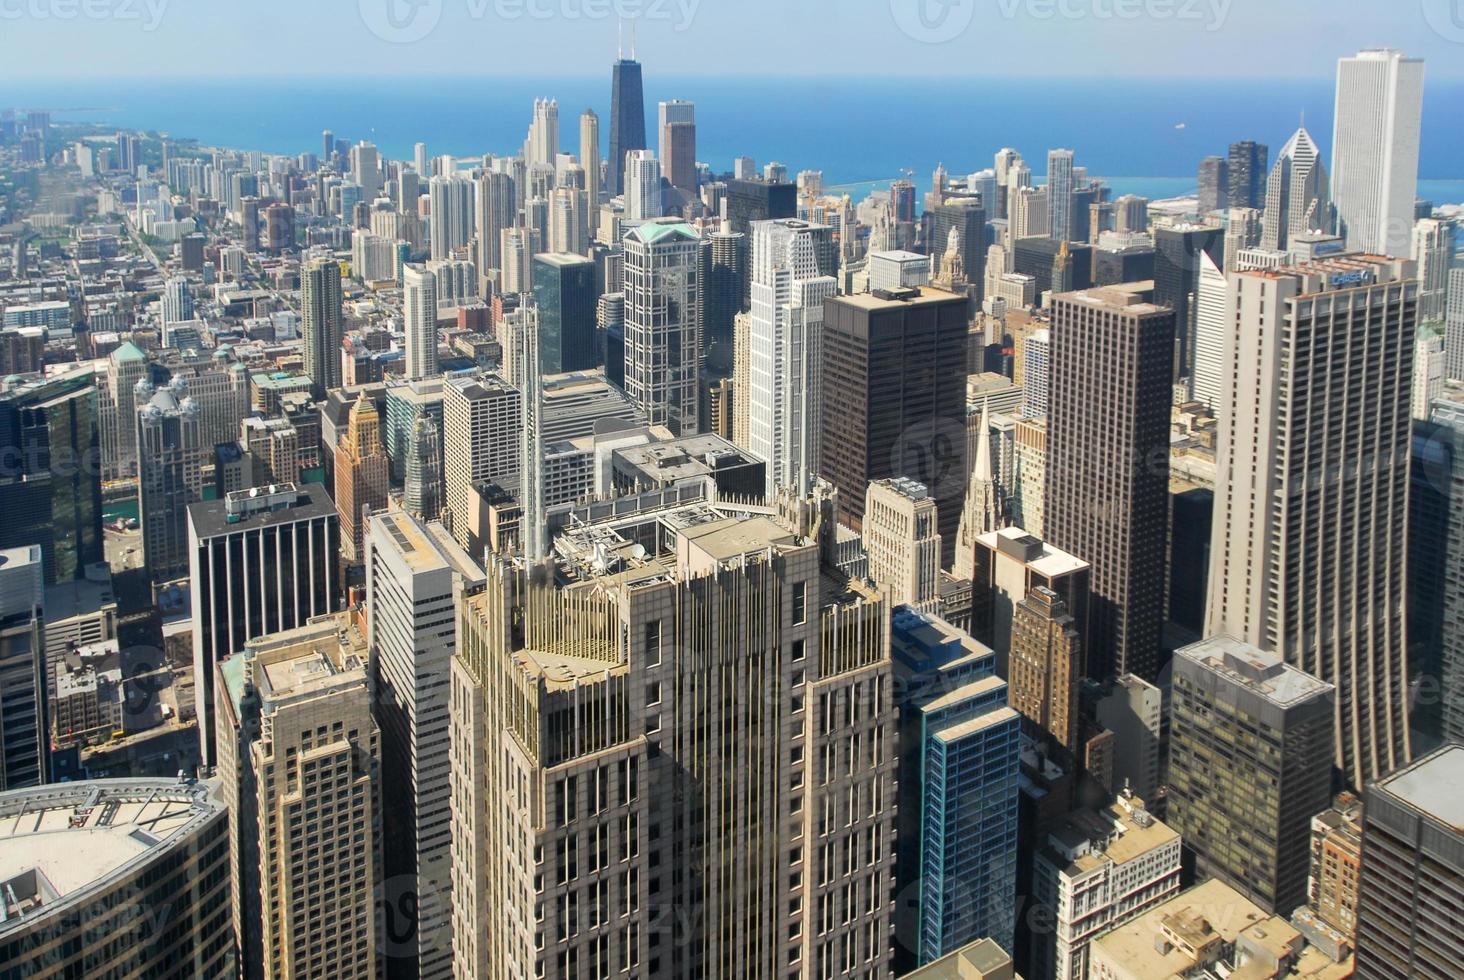 vista sullo skyline di Chicago foto